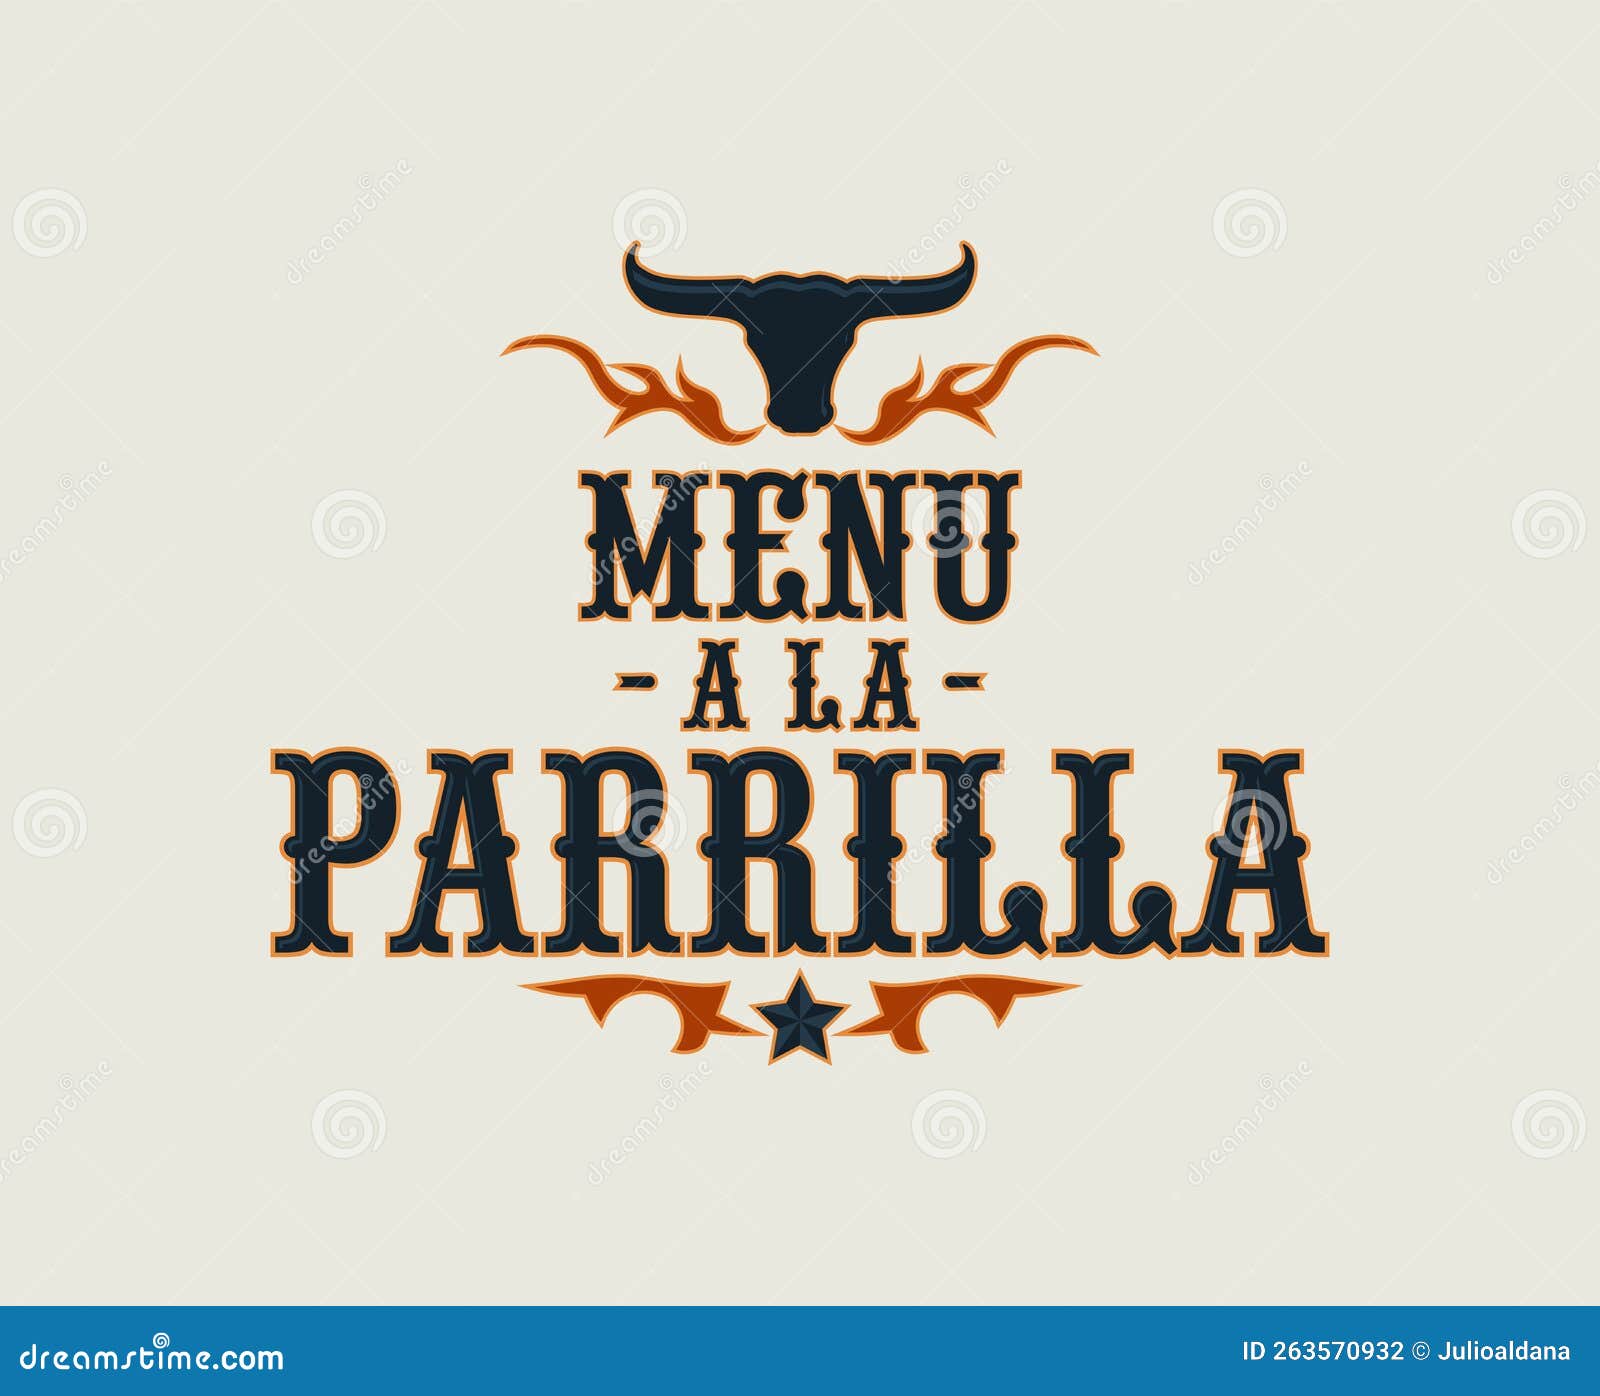 menu a la parrilla, grill menu spanish text .